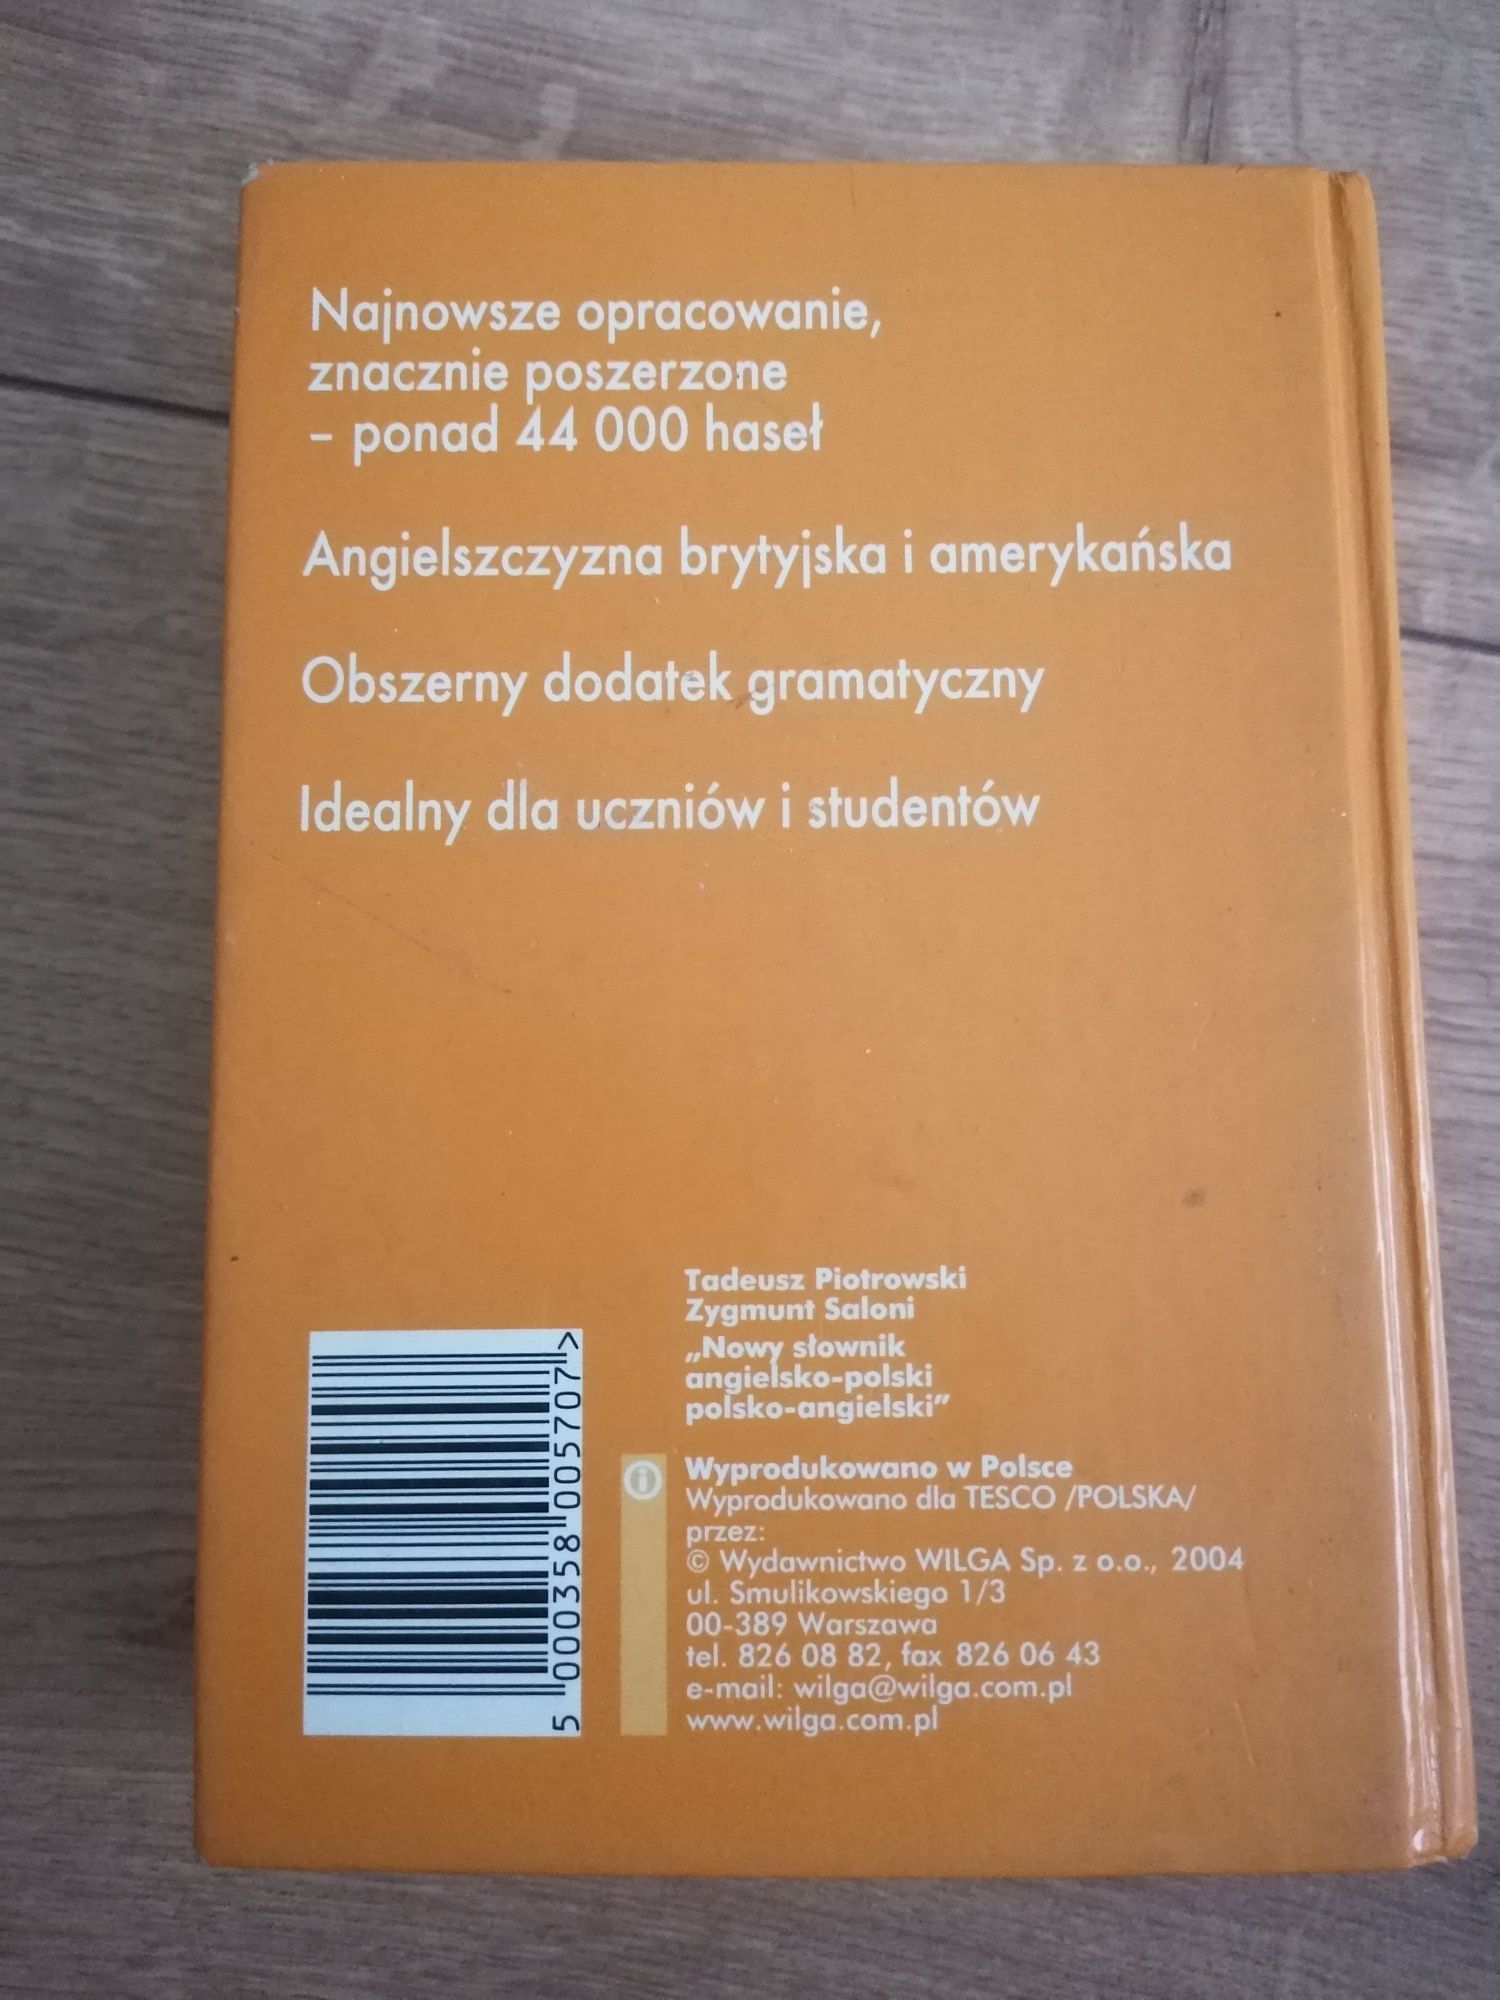 "Nowy słownik angielsko-polski polsko-angielski Piotrowski, Saloni